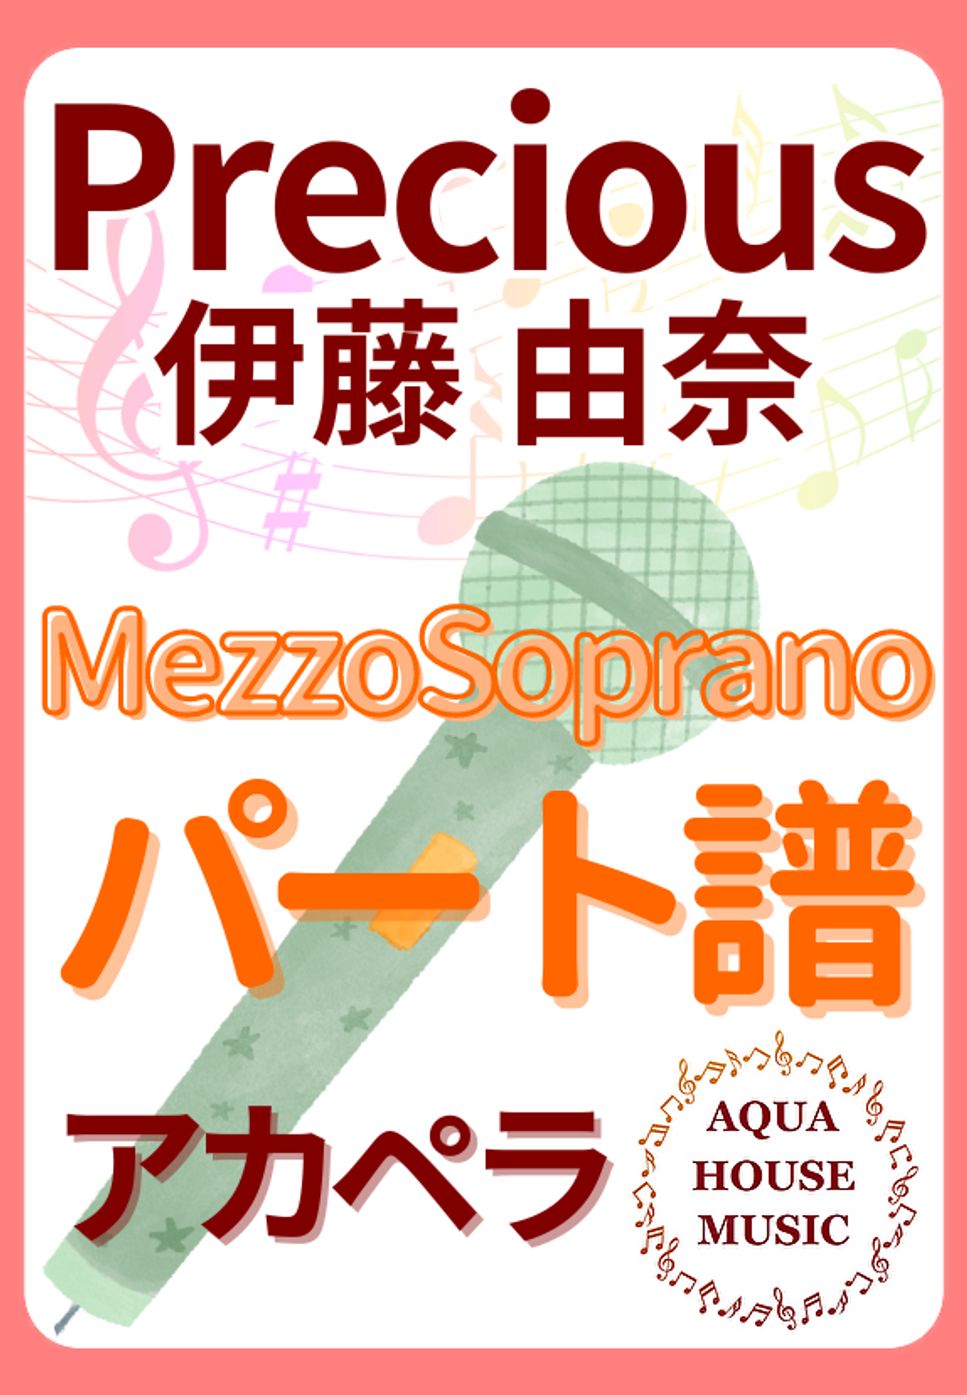 伊藤 由奈 - PRECIOUS (アカペラ楽譜♪MezzoSopranoパート譜) by 飯田 亜紗子